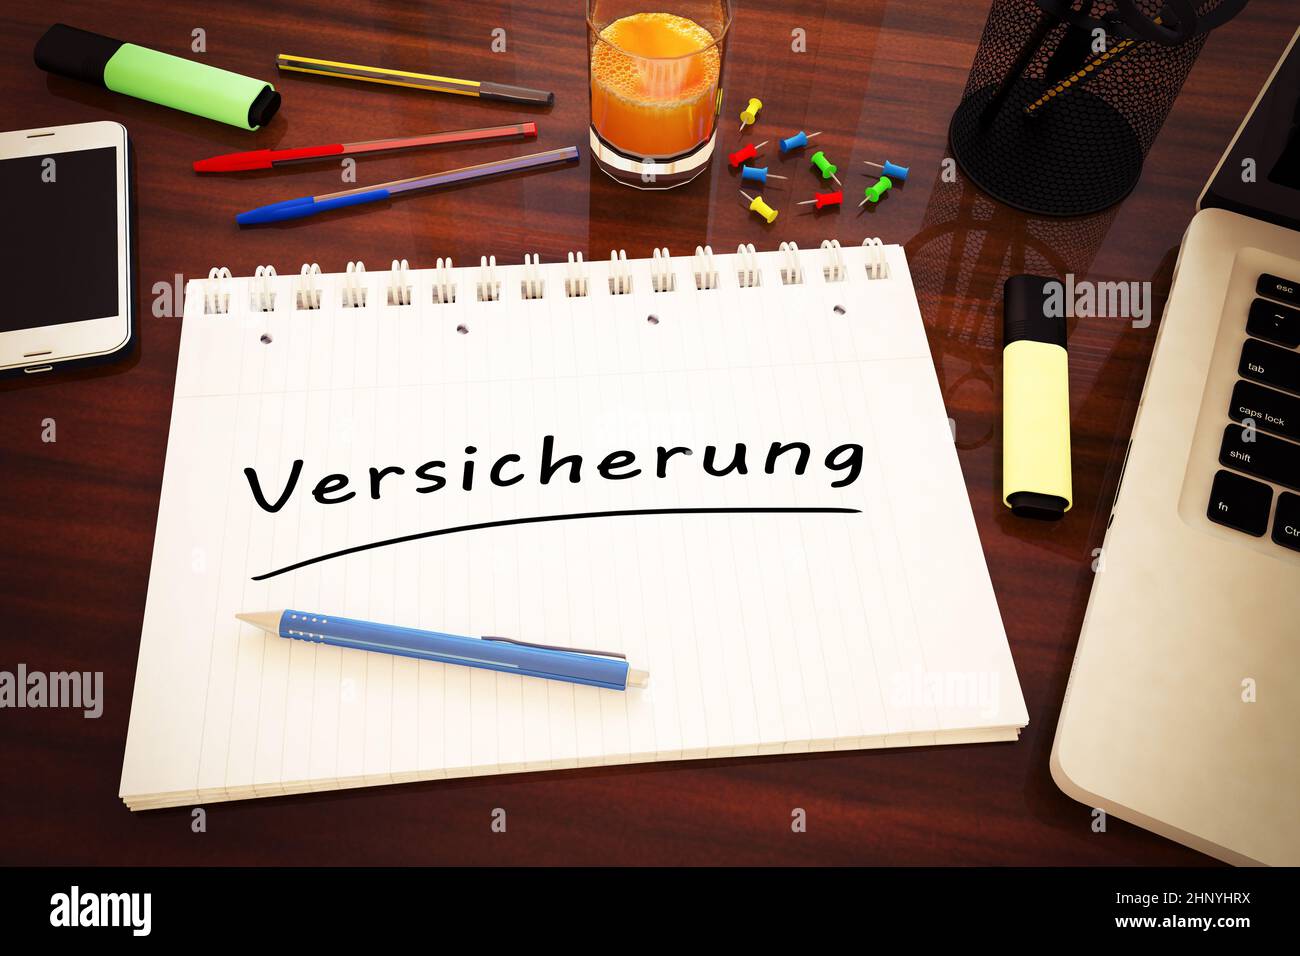 Versicherung - german word for insurance or assurance - handwritten text in a notebook on a desk - 3d render illustration. Stock Photo